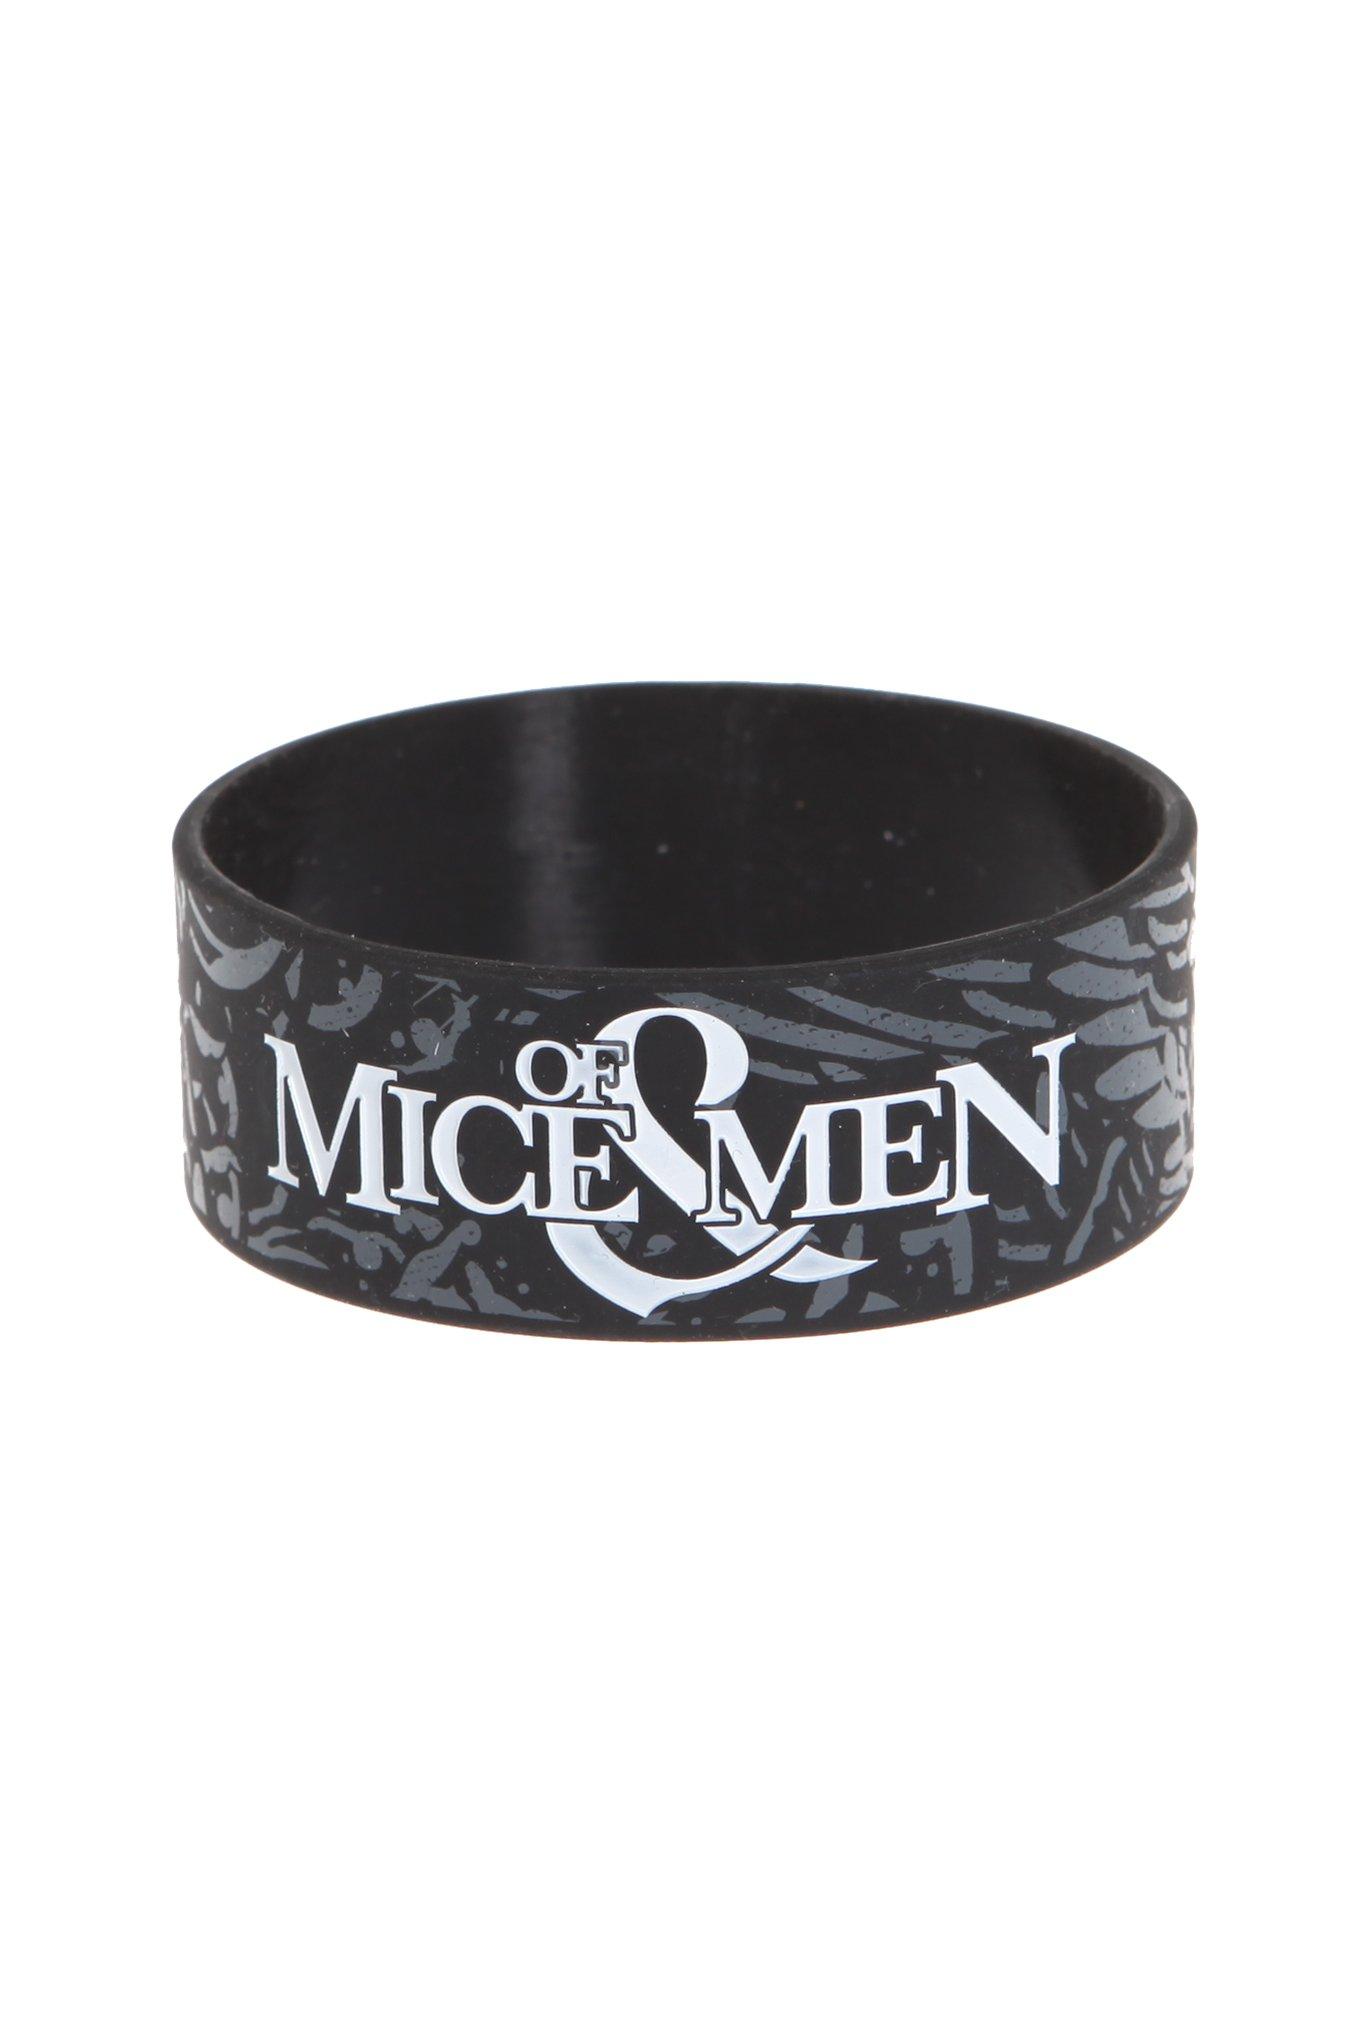 Of Mice & Men Eagle Rubber Bracelet, , hi-res